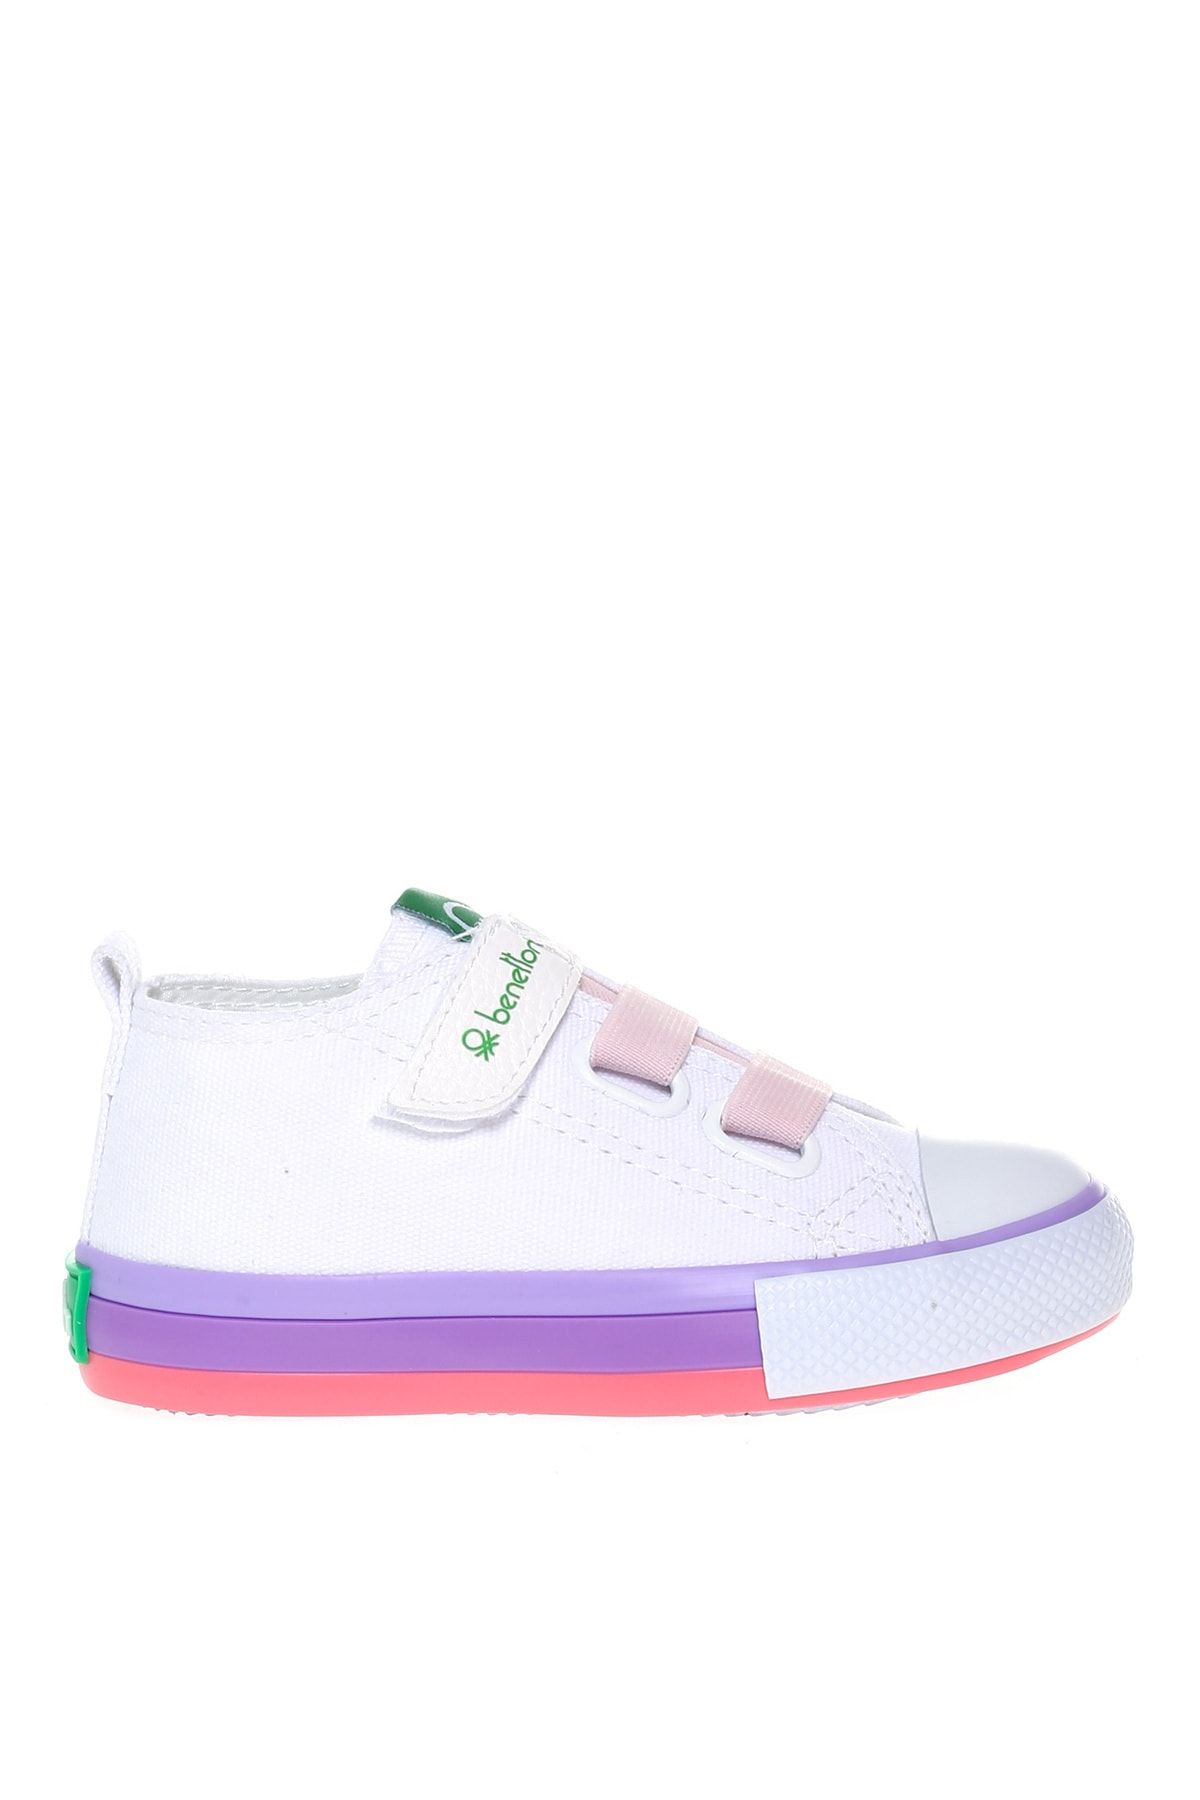 Benetton Beyaz - Pembe Kız Çocuk Yürüyüş Ayakkabısı BN-30649 177-Beyaz-Pembe